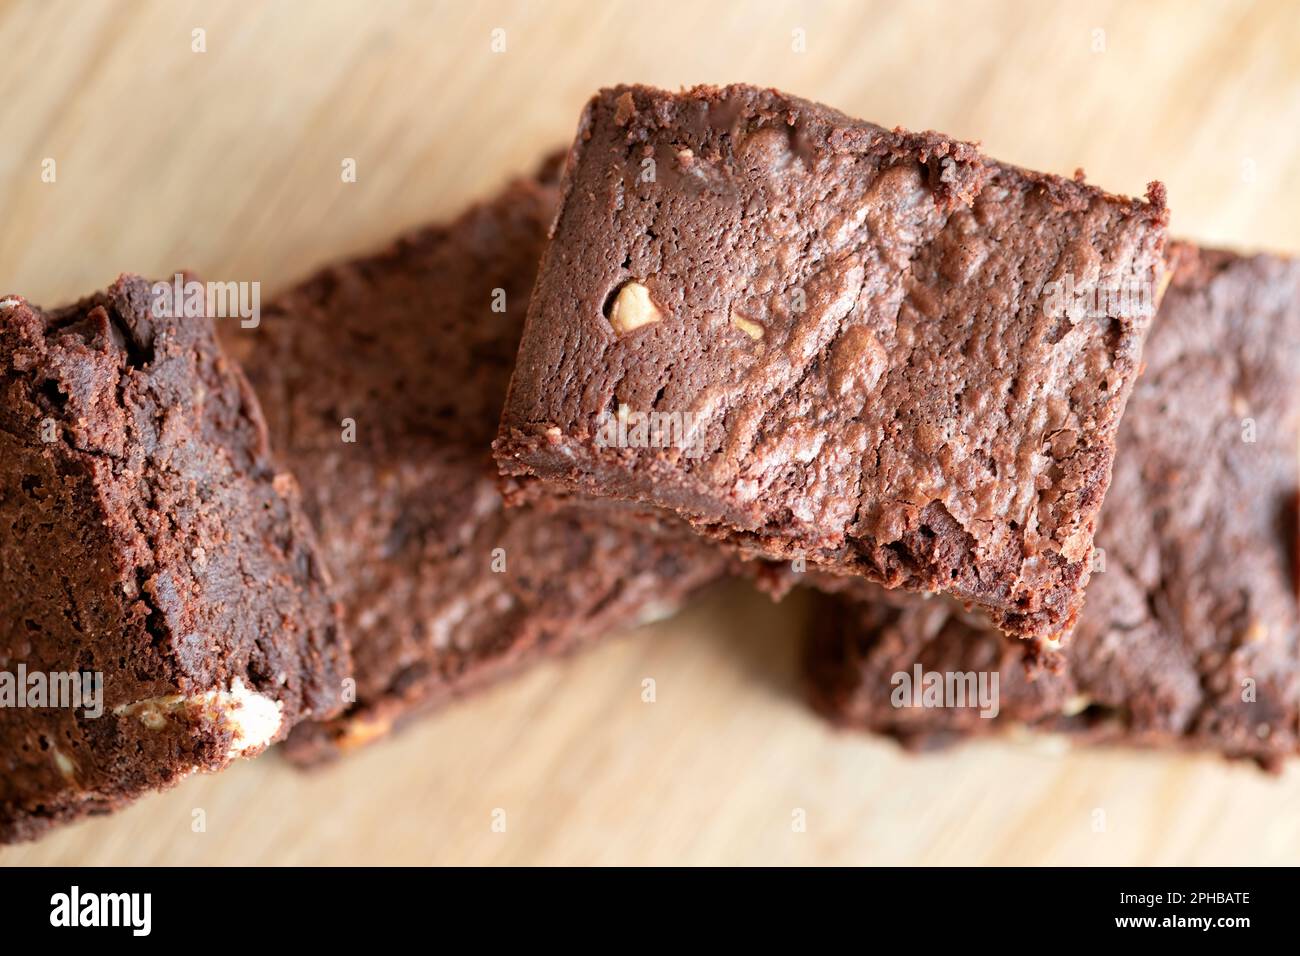 Un lote de brownies de chocolate triple recién horneados en casa dispuestos en una bandeja de madera. Los brownies todavía están calientes y pegajosos. un lujo indulgente Foto de stock